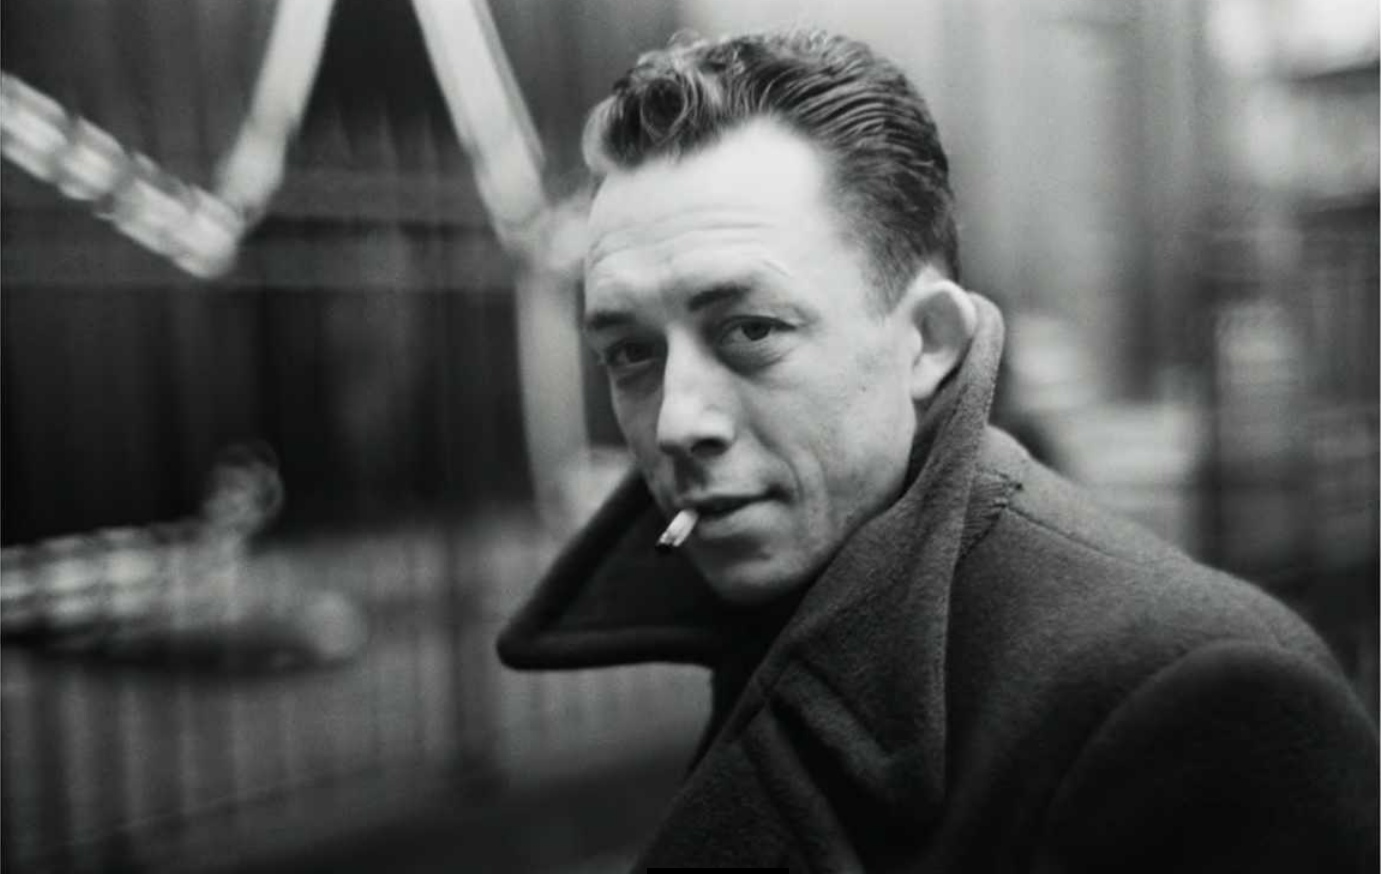 Le Saviez-vous : La Tragique Fin d'Albert Camus